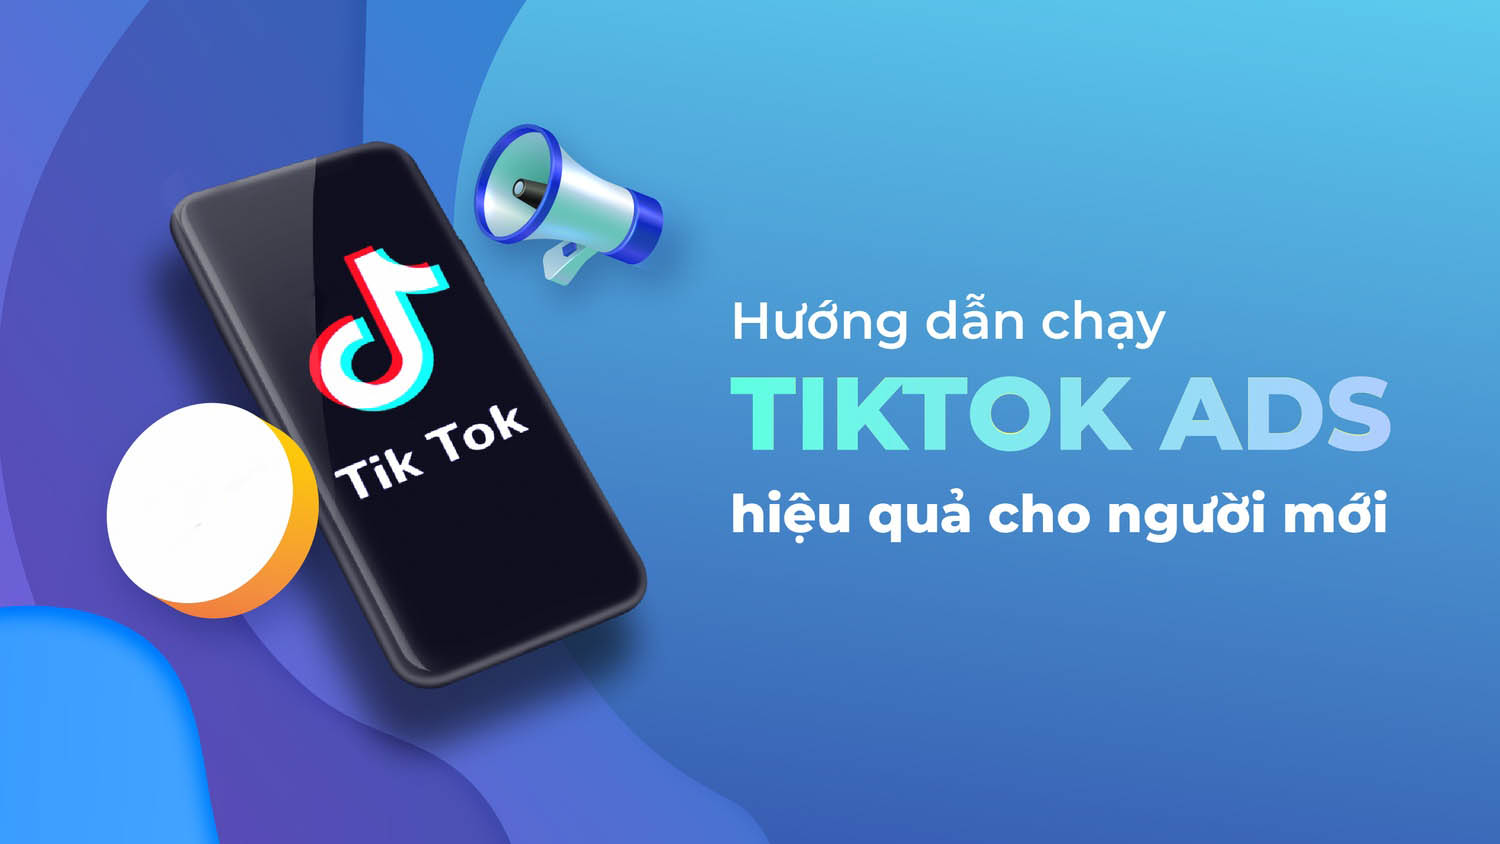 Quảng cáo Tiktok ads là gì?